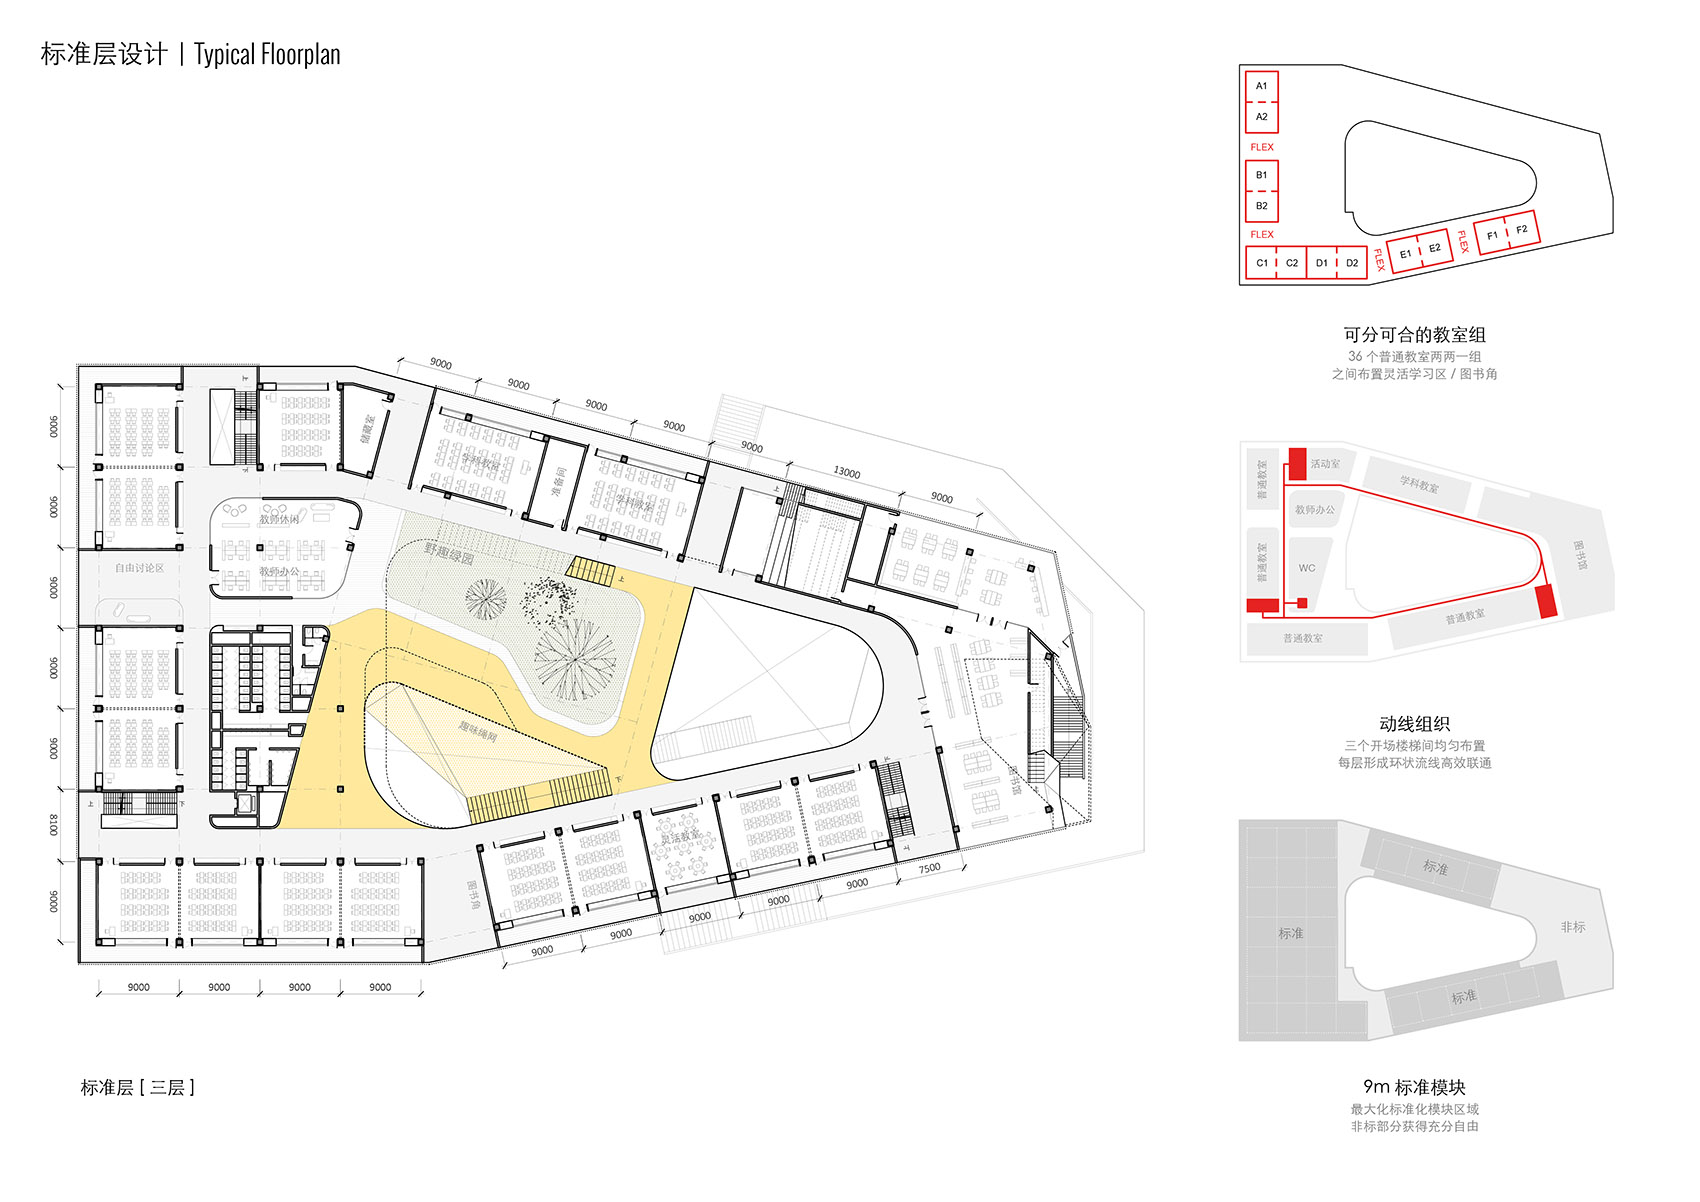 重叠校园：莲花小学校园设计，深圳/高密度垂直分区式校园-80